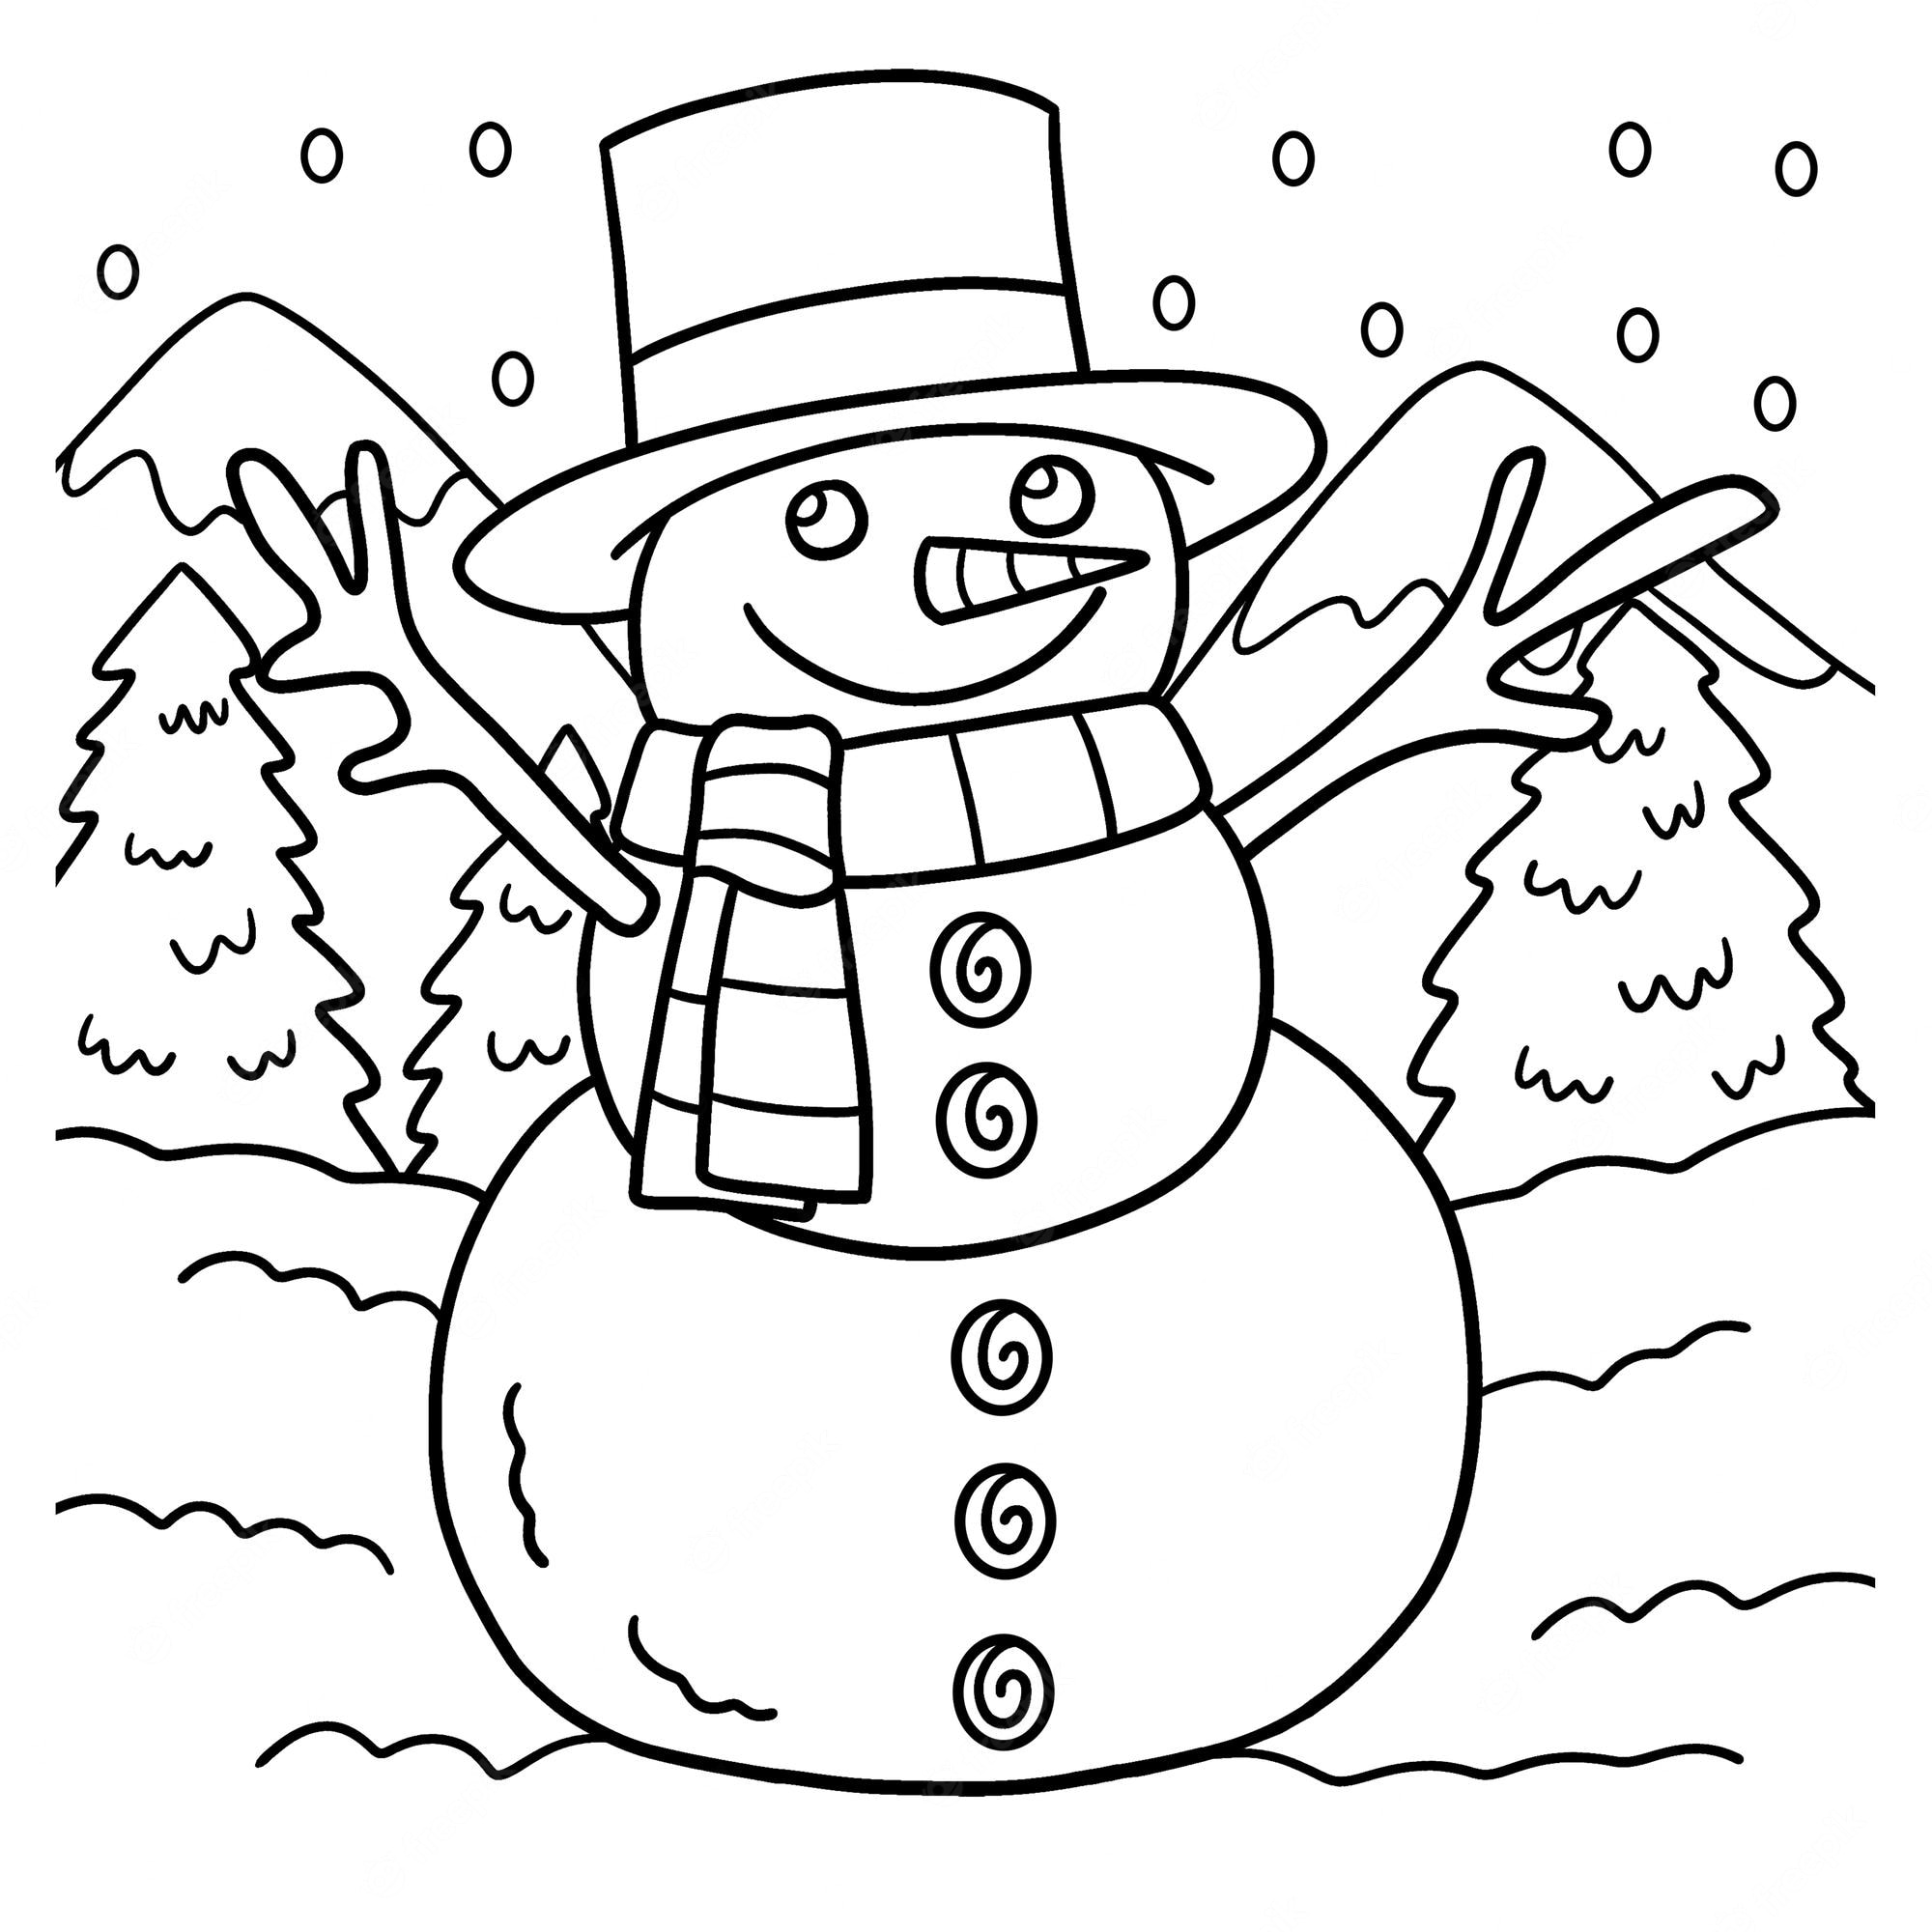 Как нарисовать снеговика: 14 классных вариантов - Лайфхакер